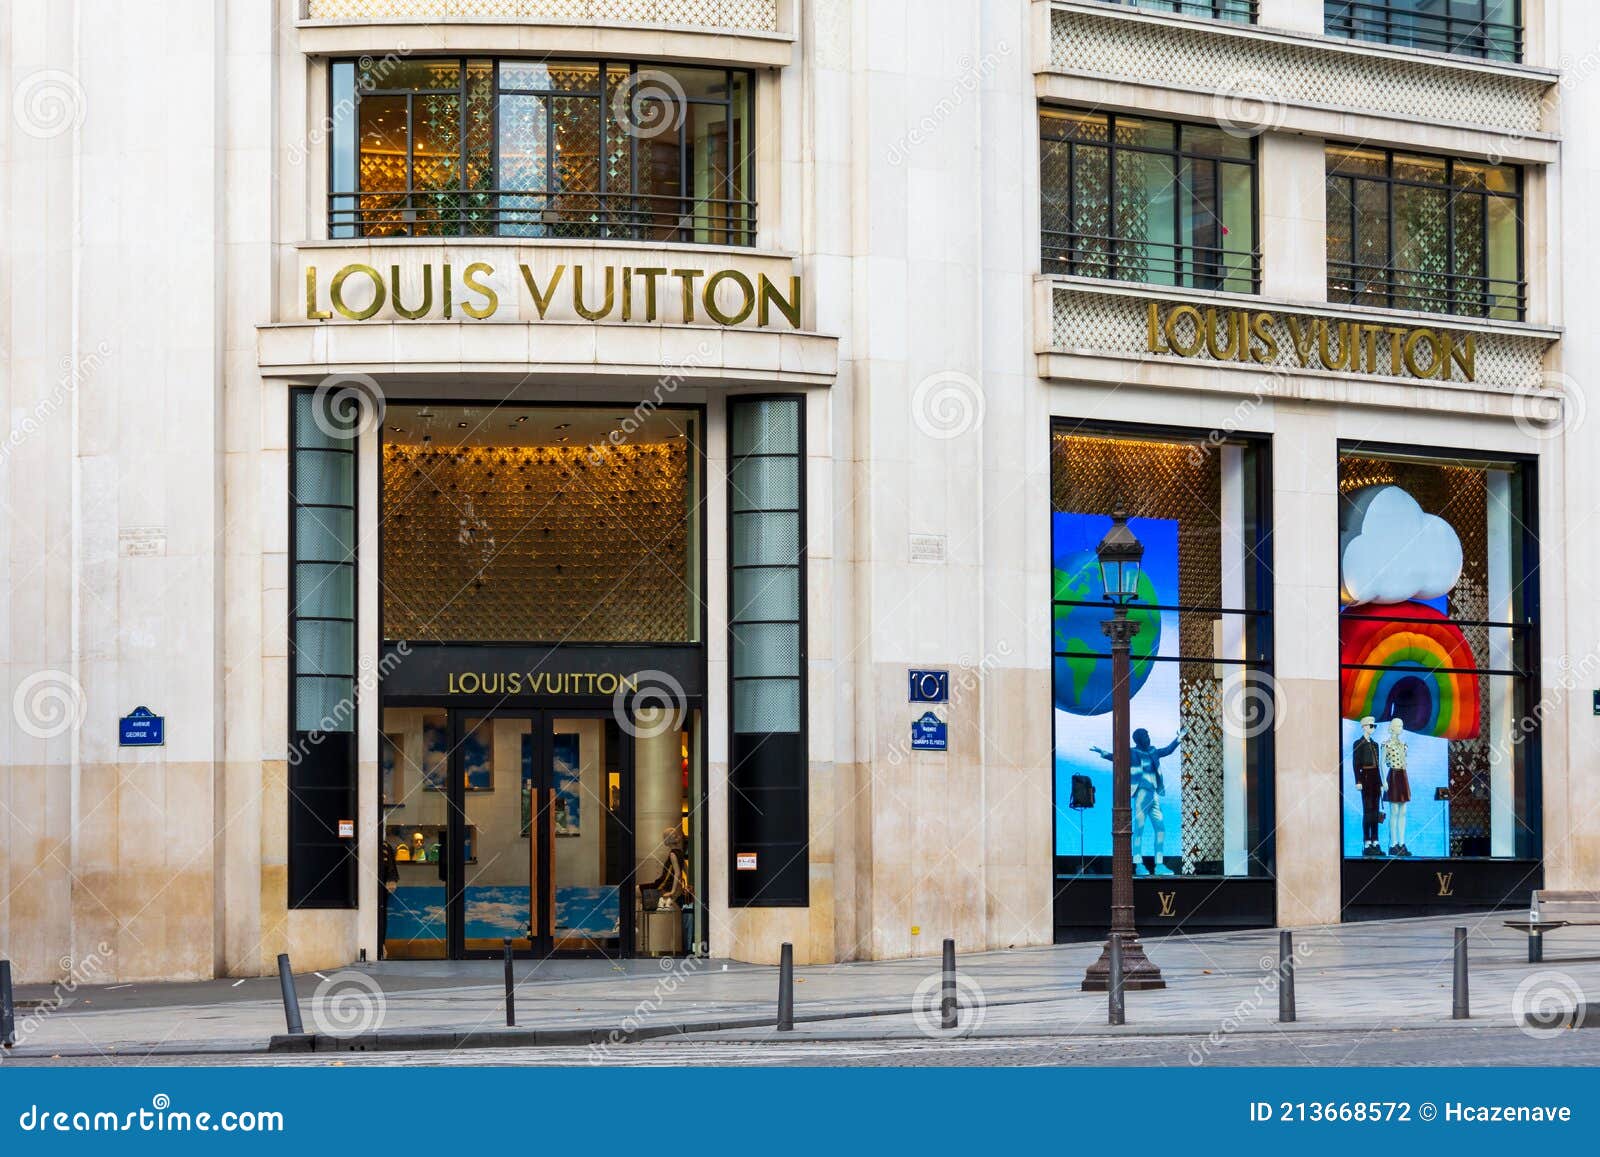 France, Paris , Louis Vuitton store on Avenue des Champs Elysees